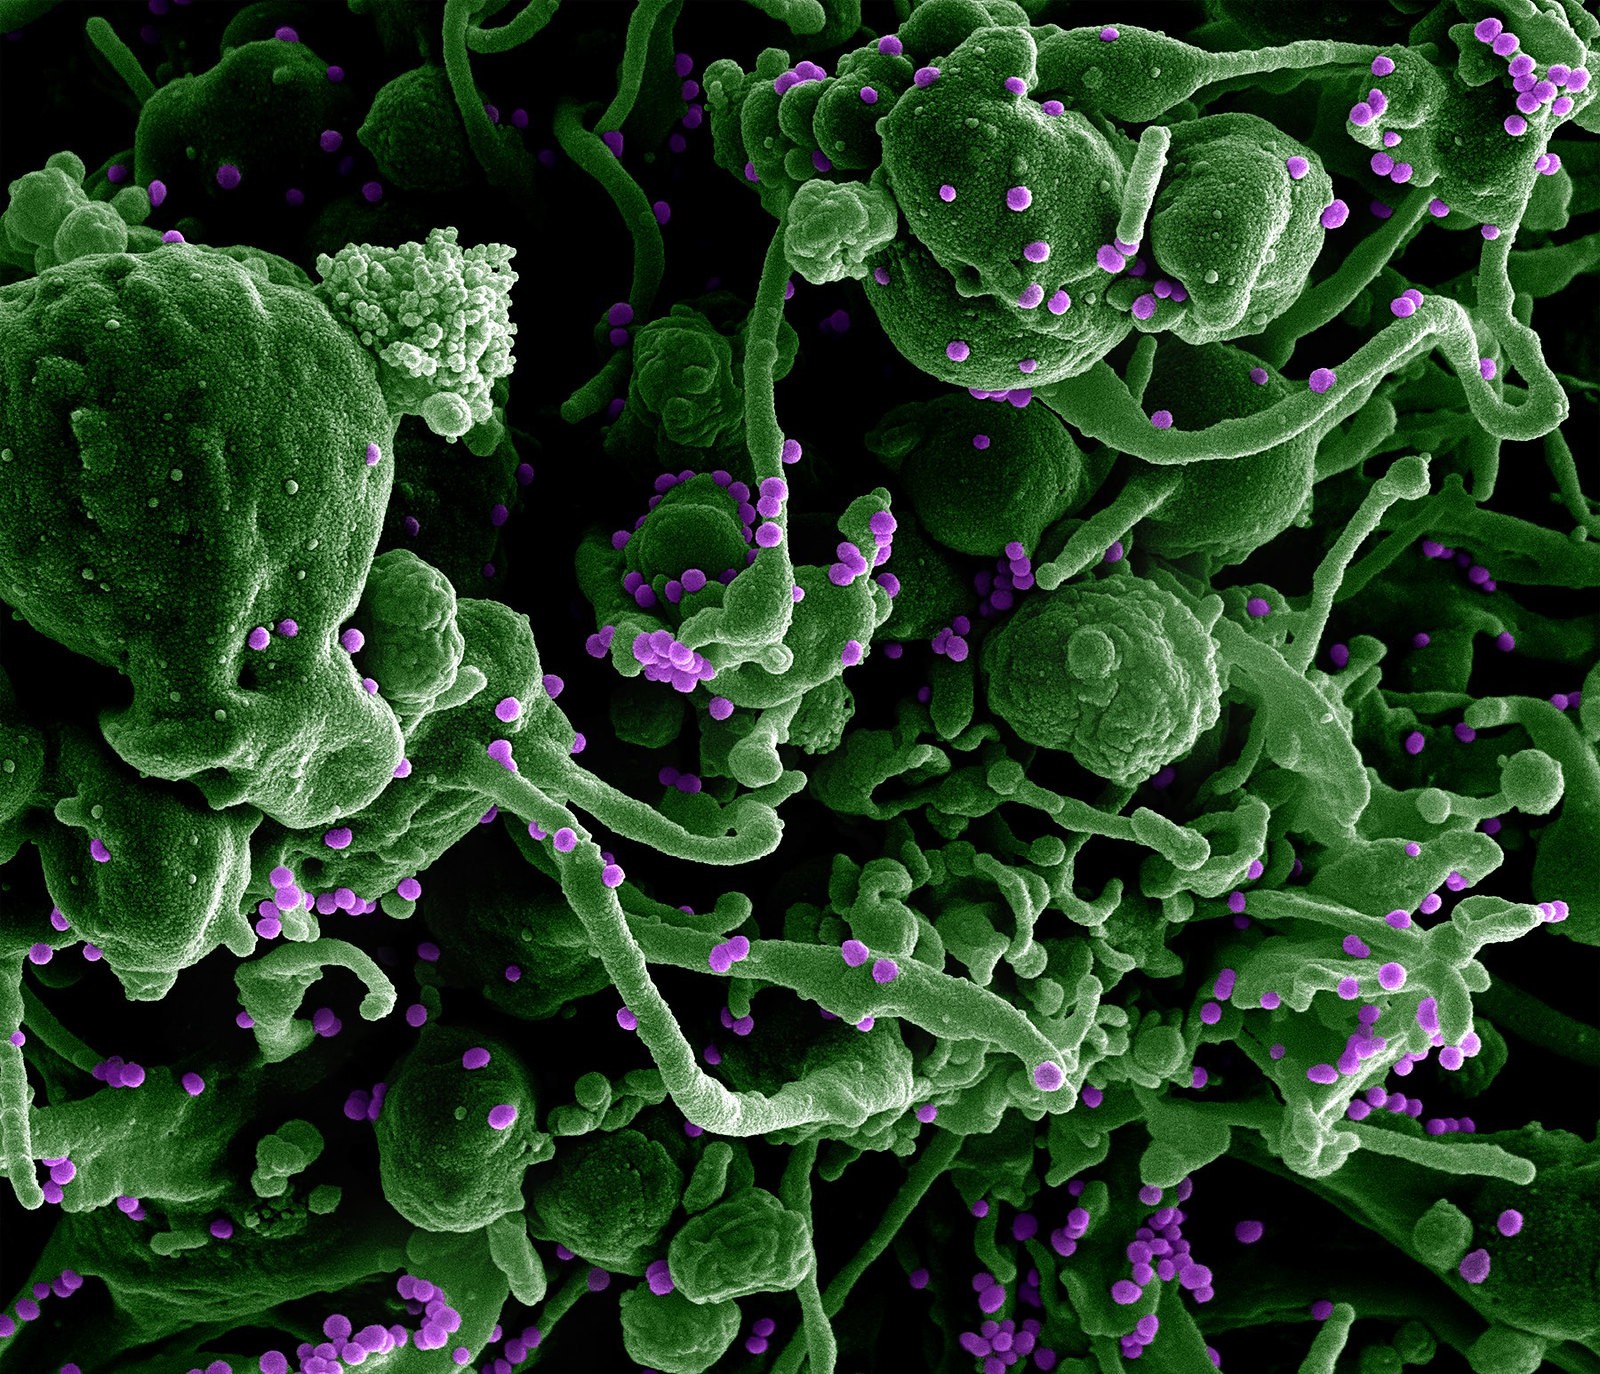 Micrografia eletrônica de varredura do vírus Lassa brotando de uma célula (Foto: NIAID)